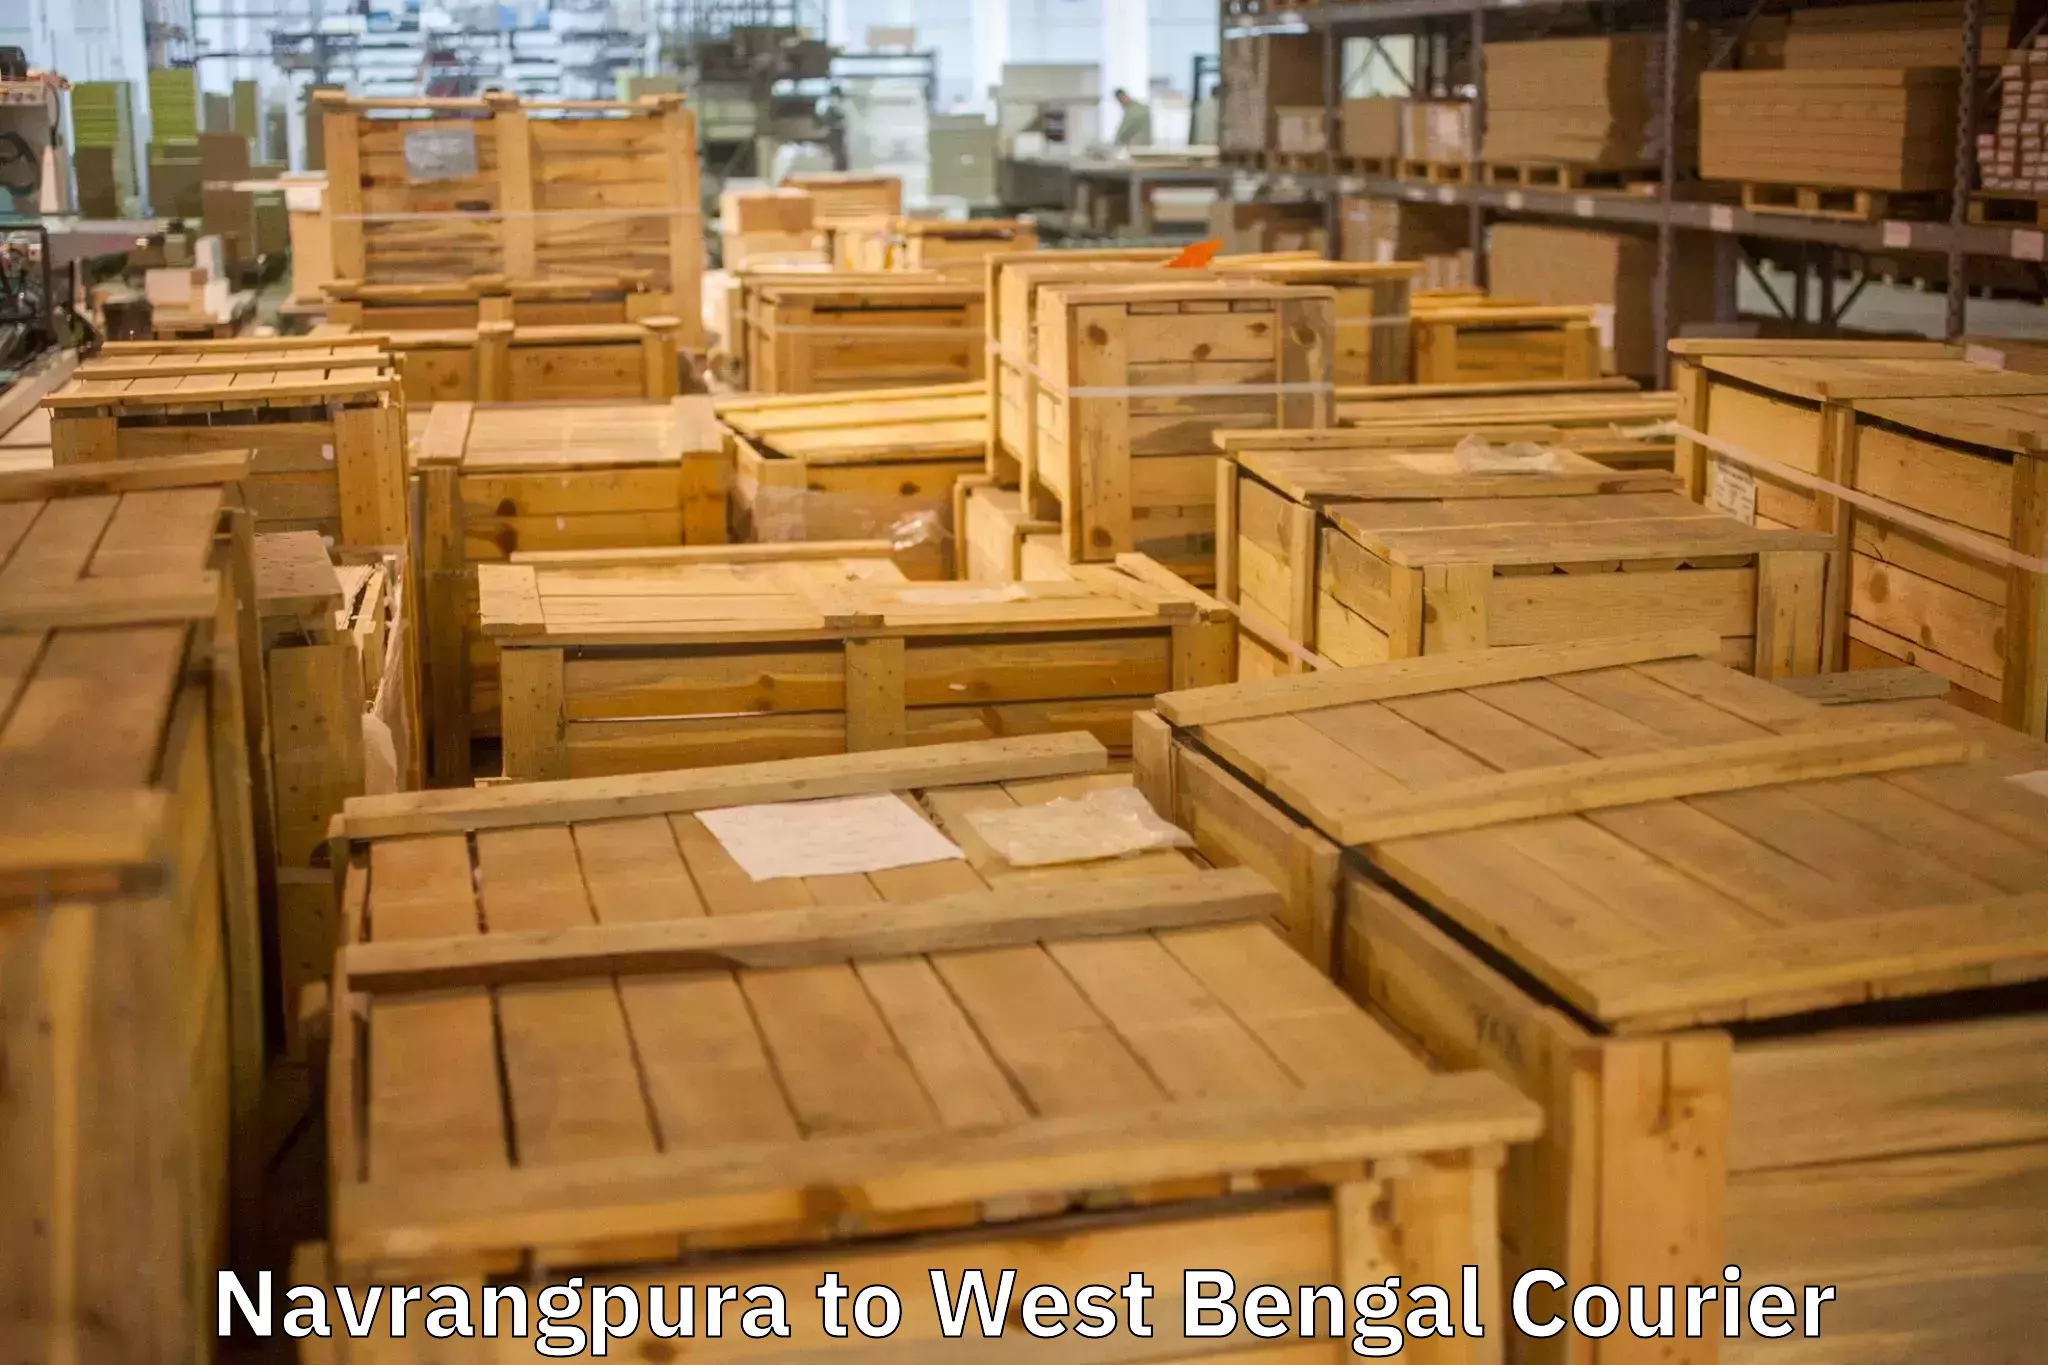 Professional furniture movers Navrangpura to Kolkata Port